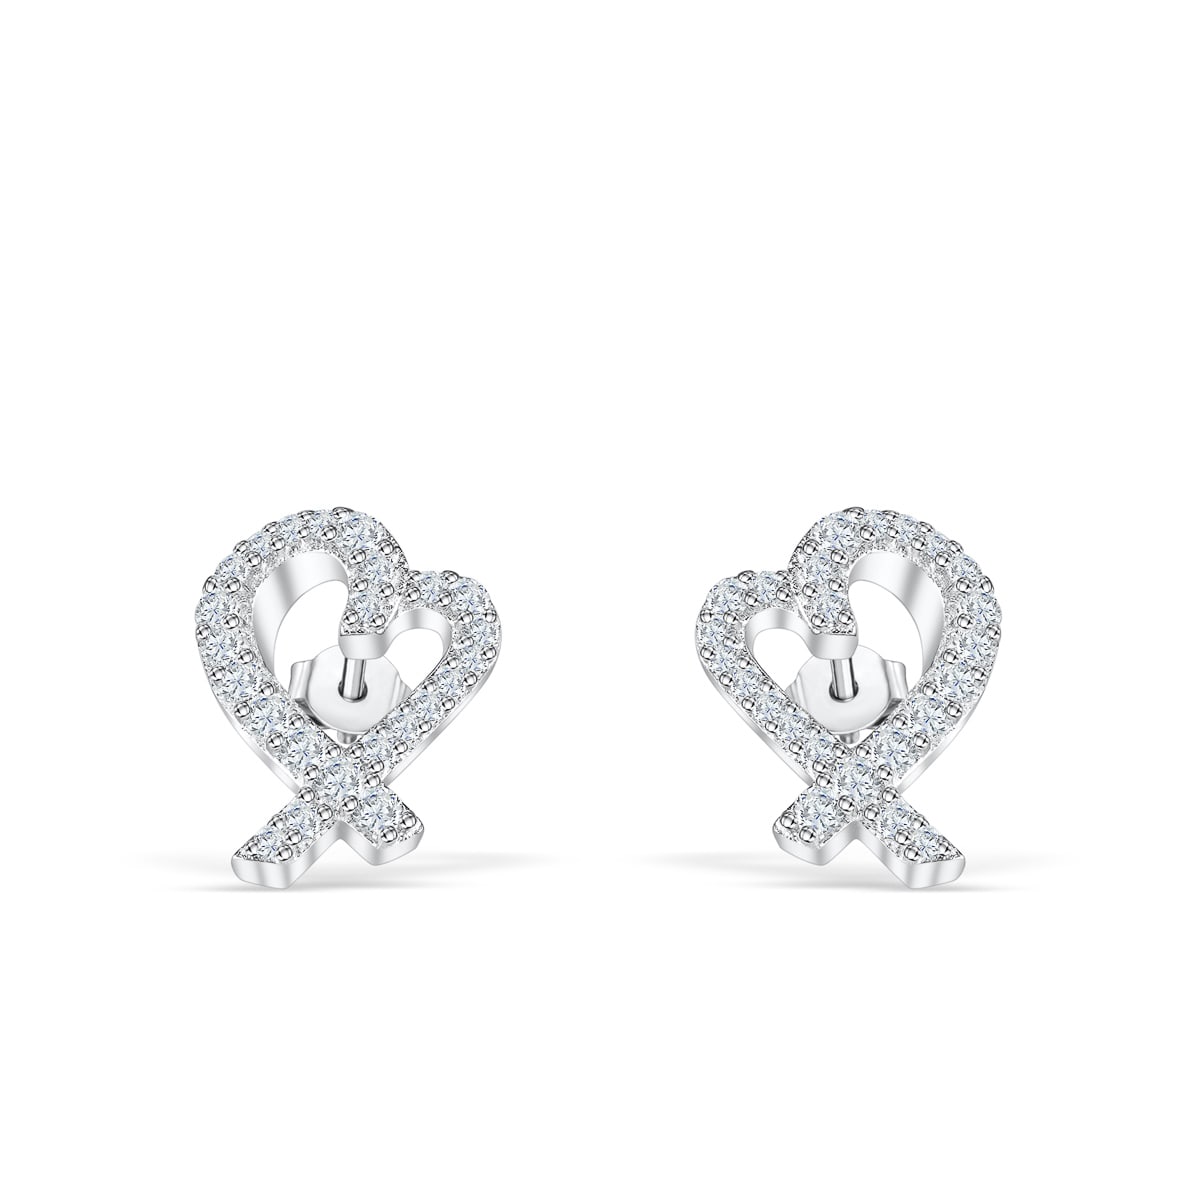 the jenna heart earrings in silver